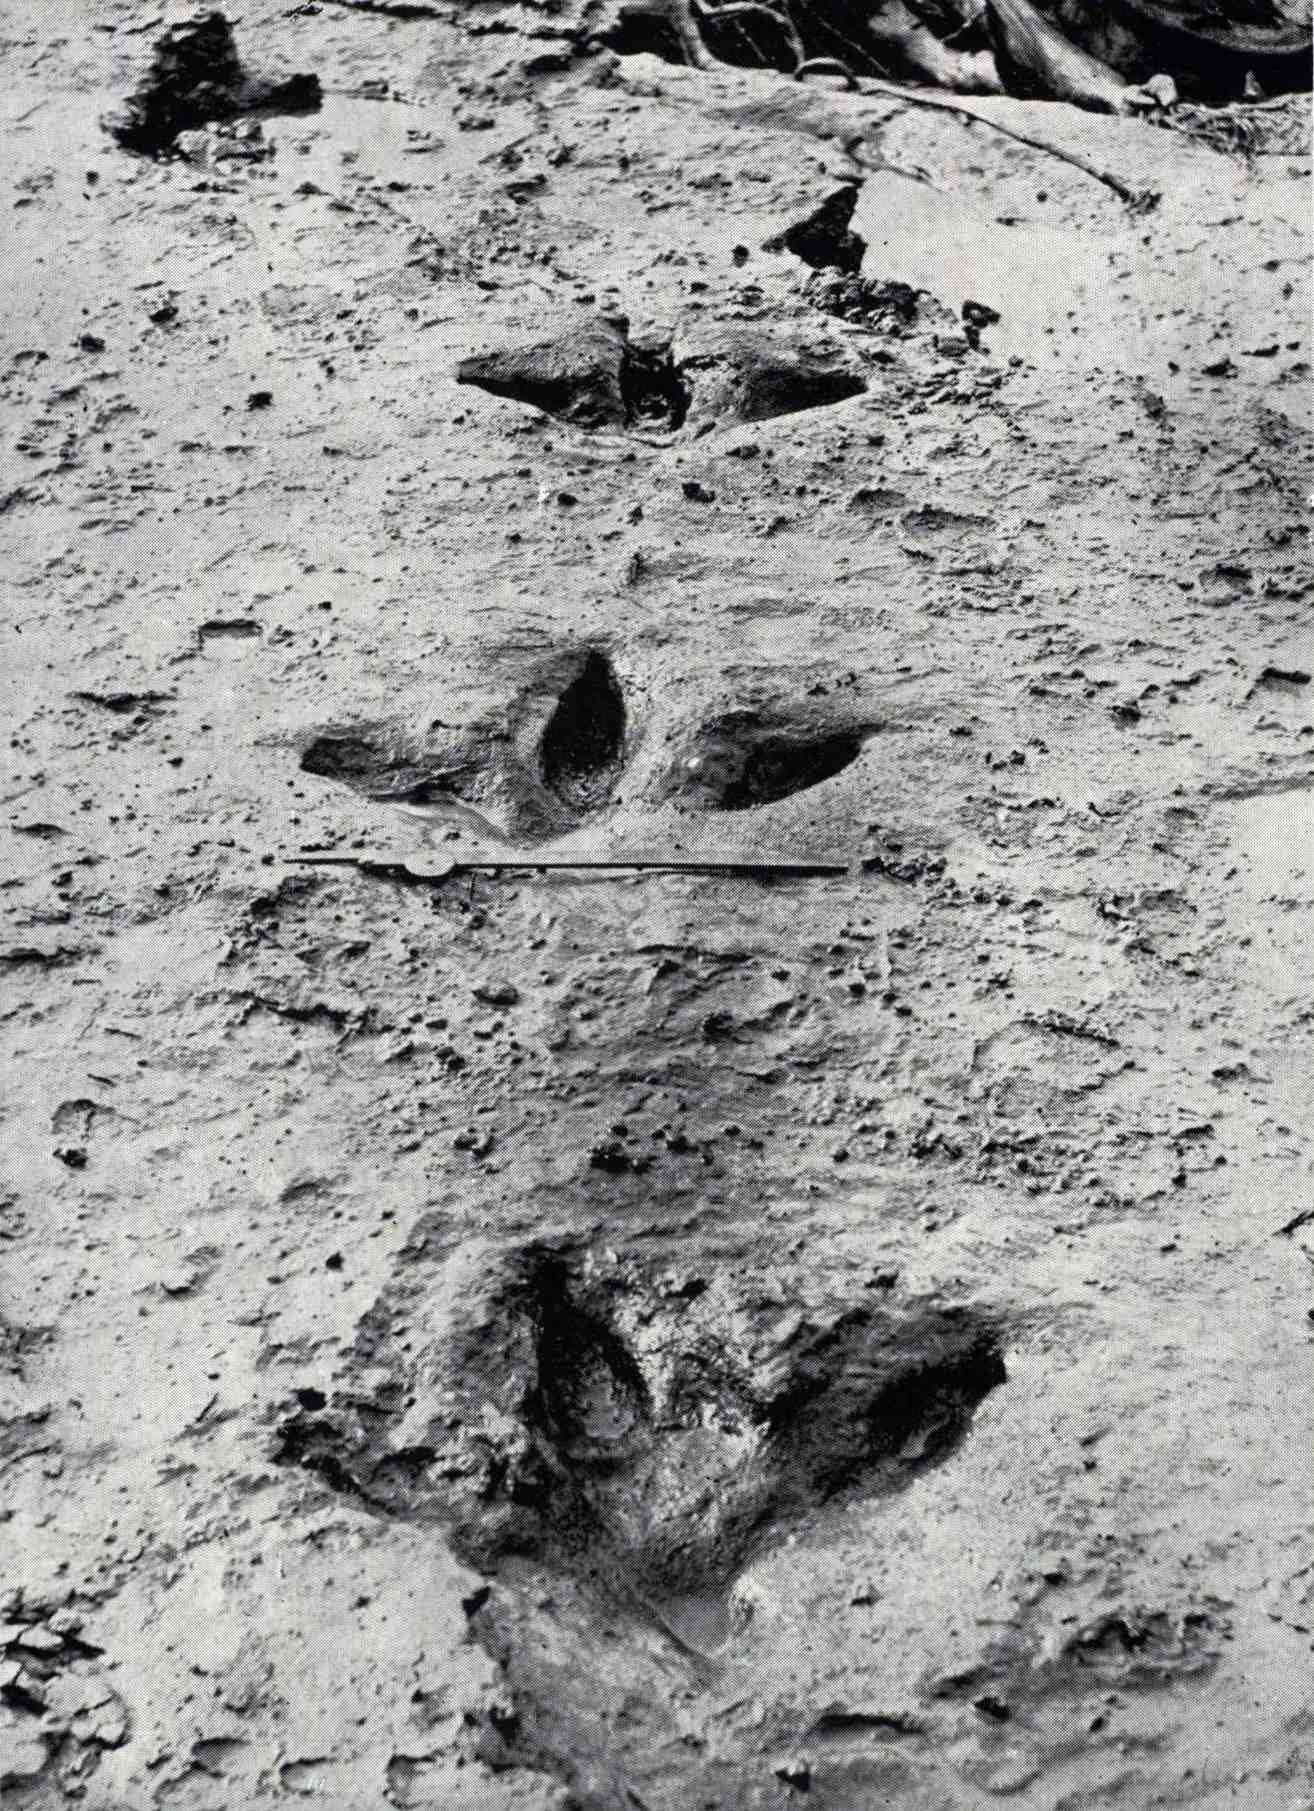 Estas huellas de Dinornis robustus quedaron expuestas en agosto de 1911 cuando una inundación en el río Manawatū arrasó con la arcilla azul que las había cubierto y preservado. Muestran que el moa tenía tres dedos fuertes que apuntaban hacia adelante y, a diferencia de la mayoría de las otras ratites, un pequeño dedo trasero.